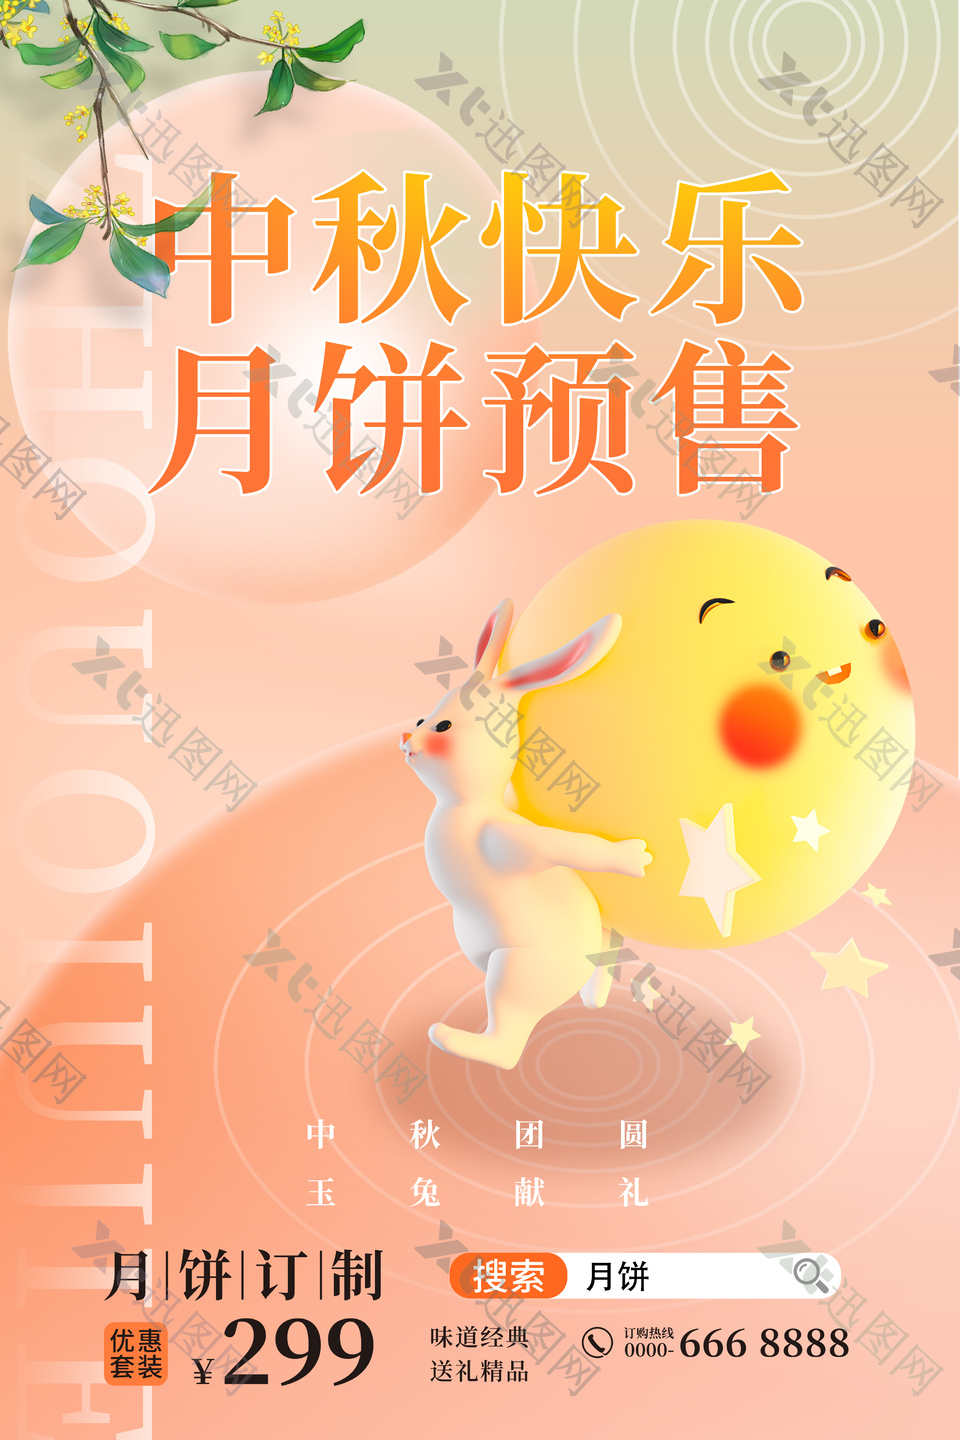 中秋快乐月饼预售创意拟人风格海报设计